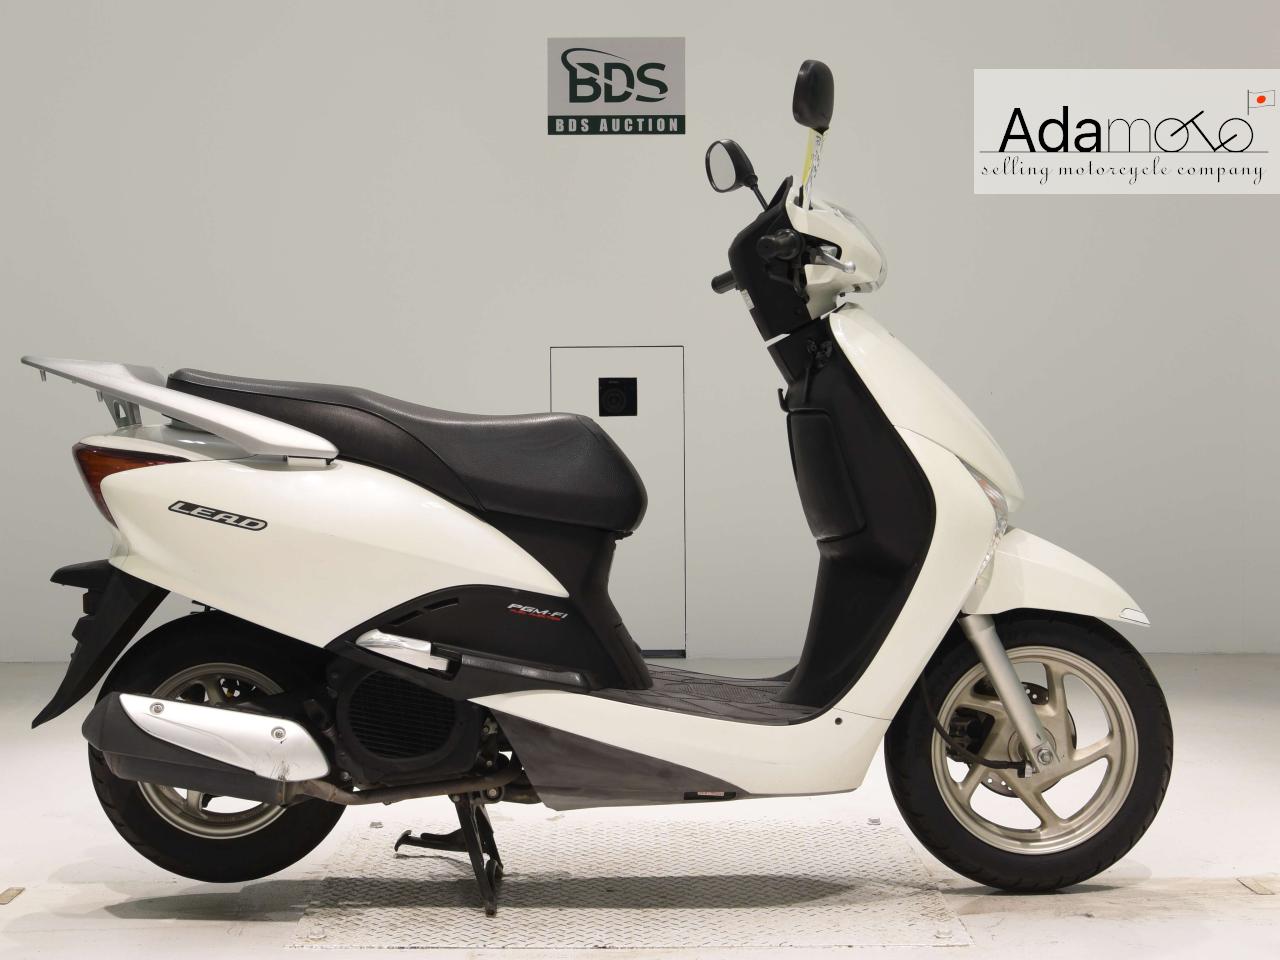 Honda LEAD110 - Adamoto - Motorcycles from Japan